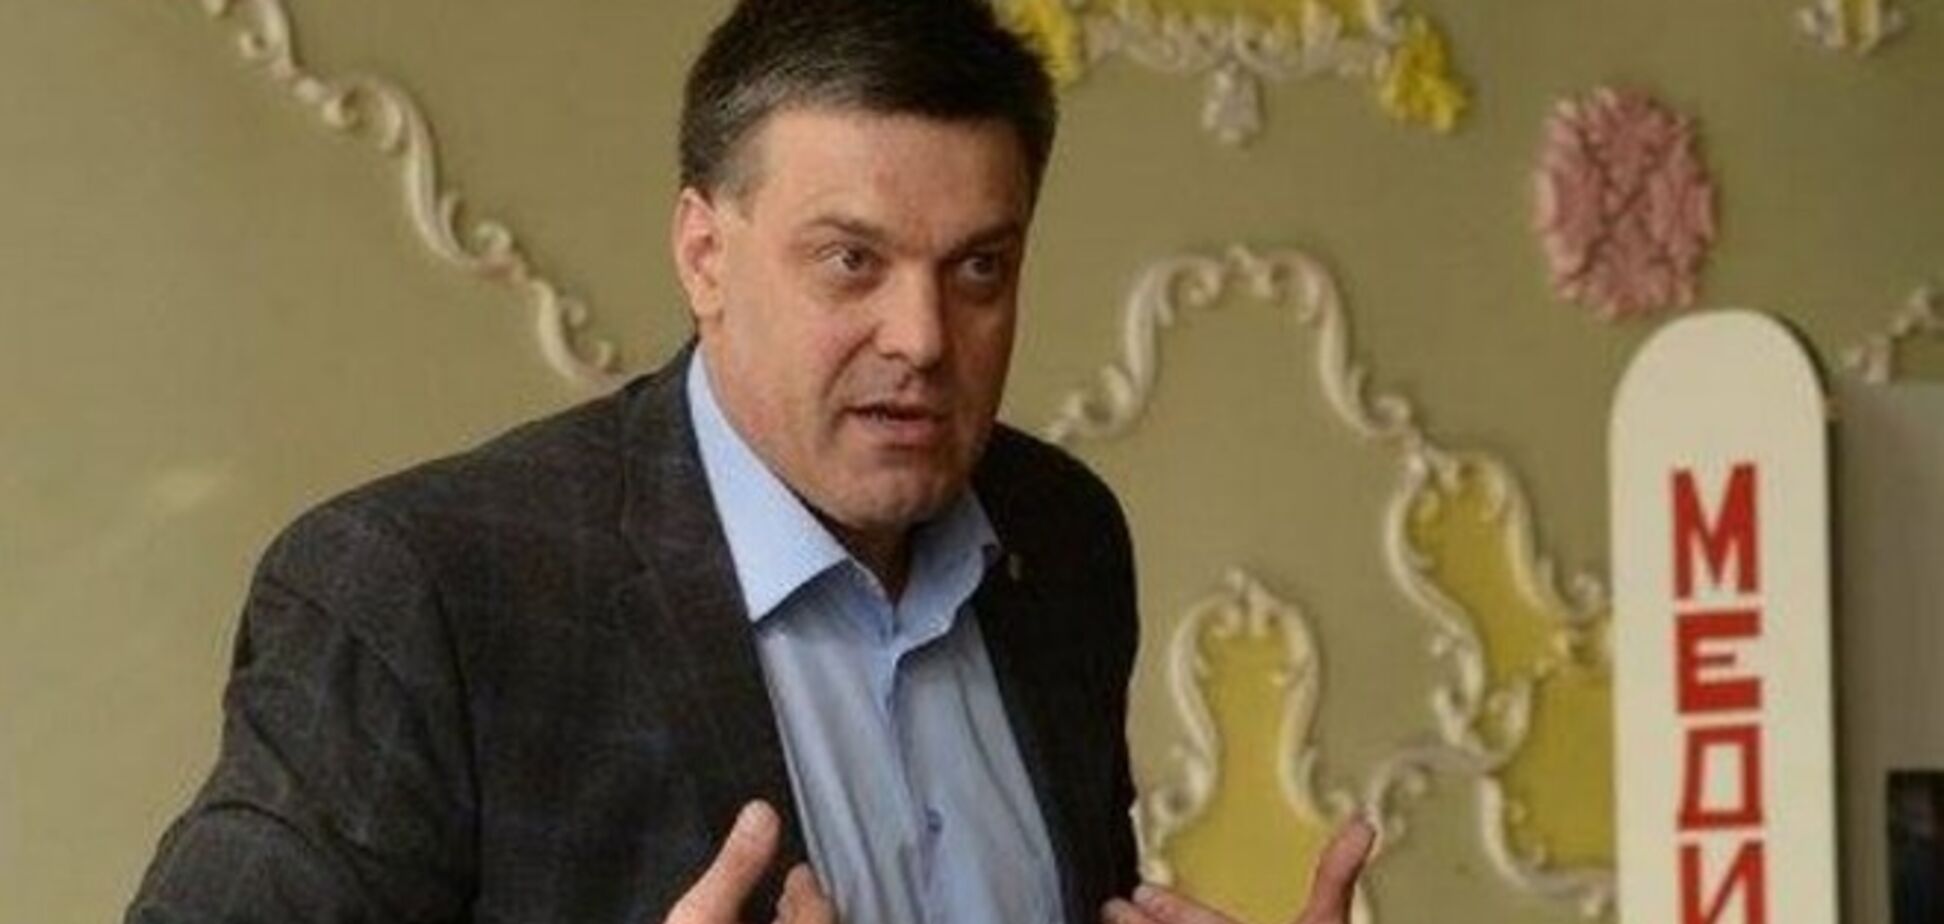 Українці розкритикували намір Тягнибока протестувати біля ЦВК: прийміть реальність, за 'Свободу' не голосують